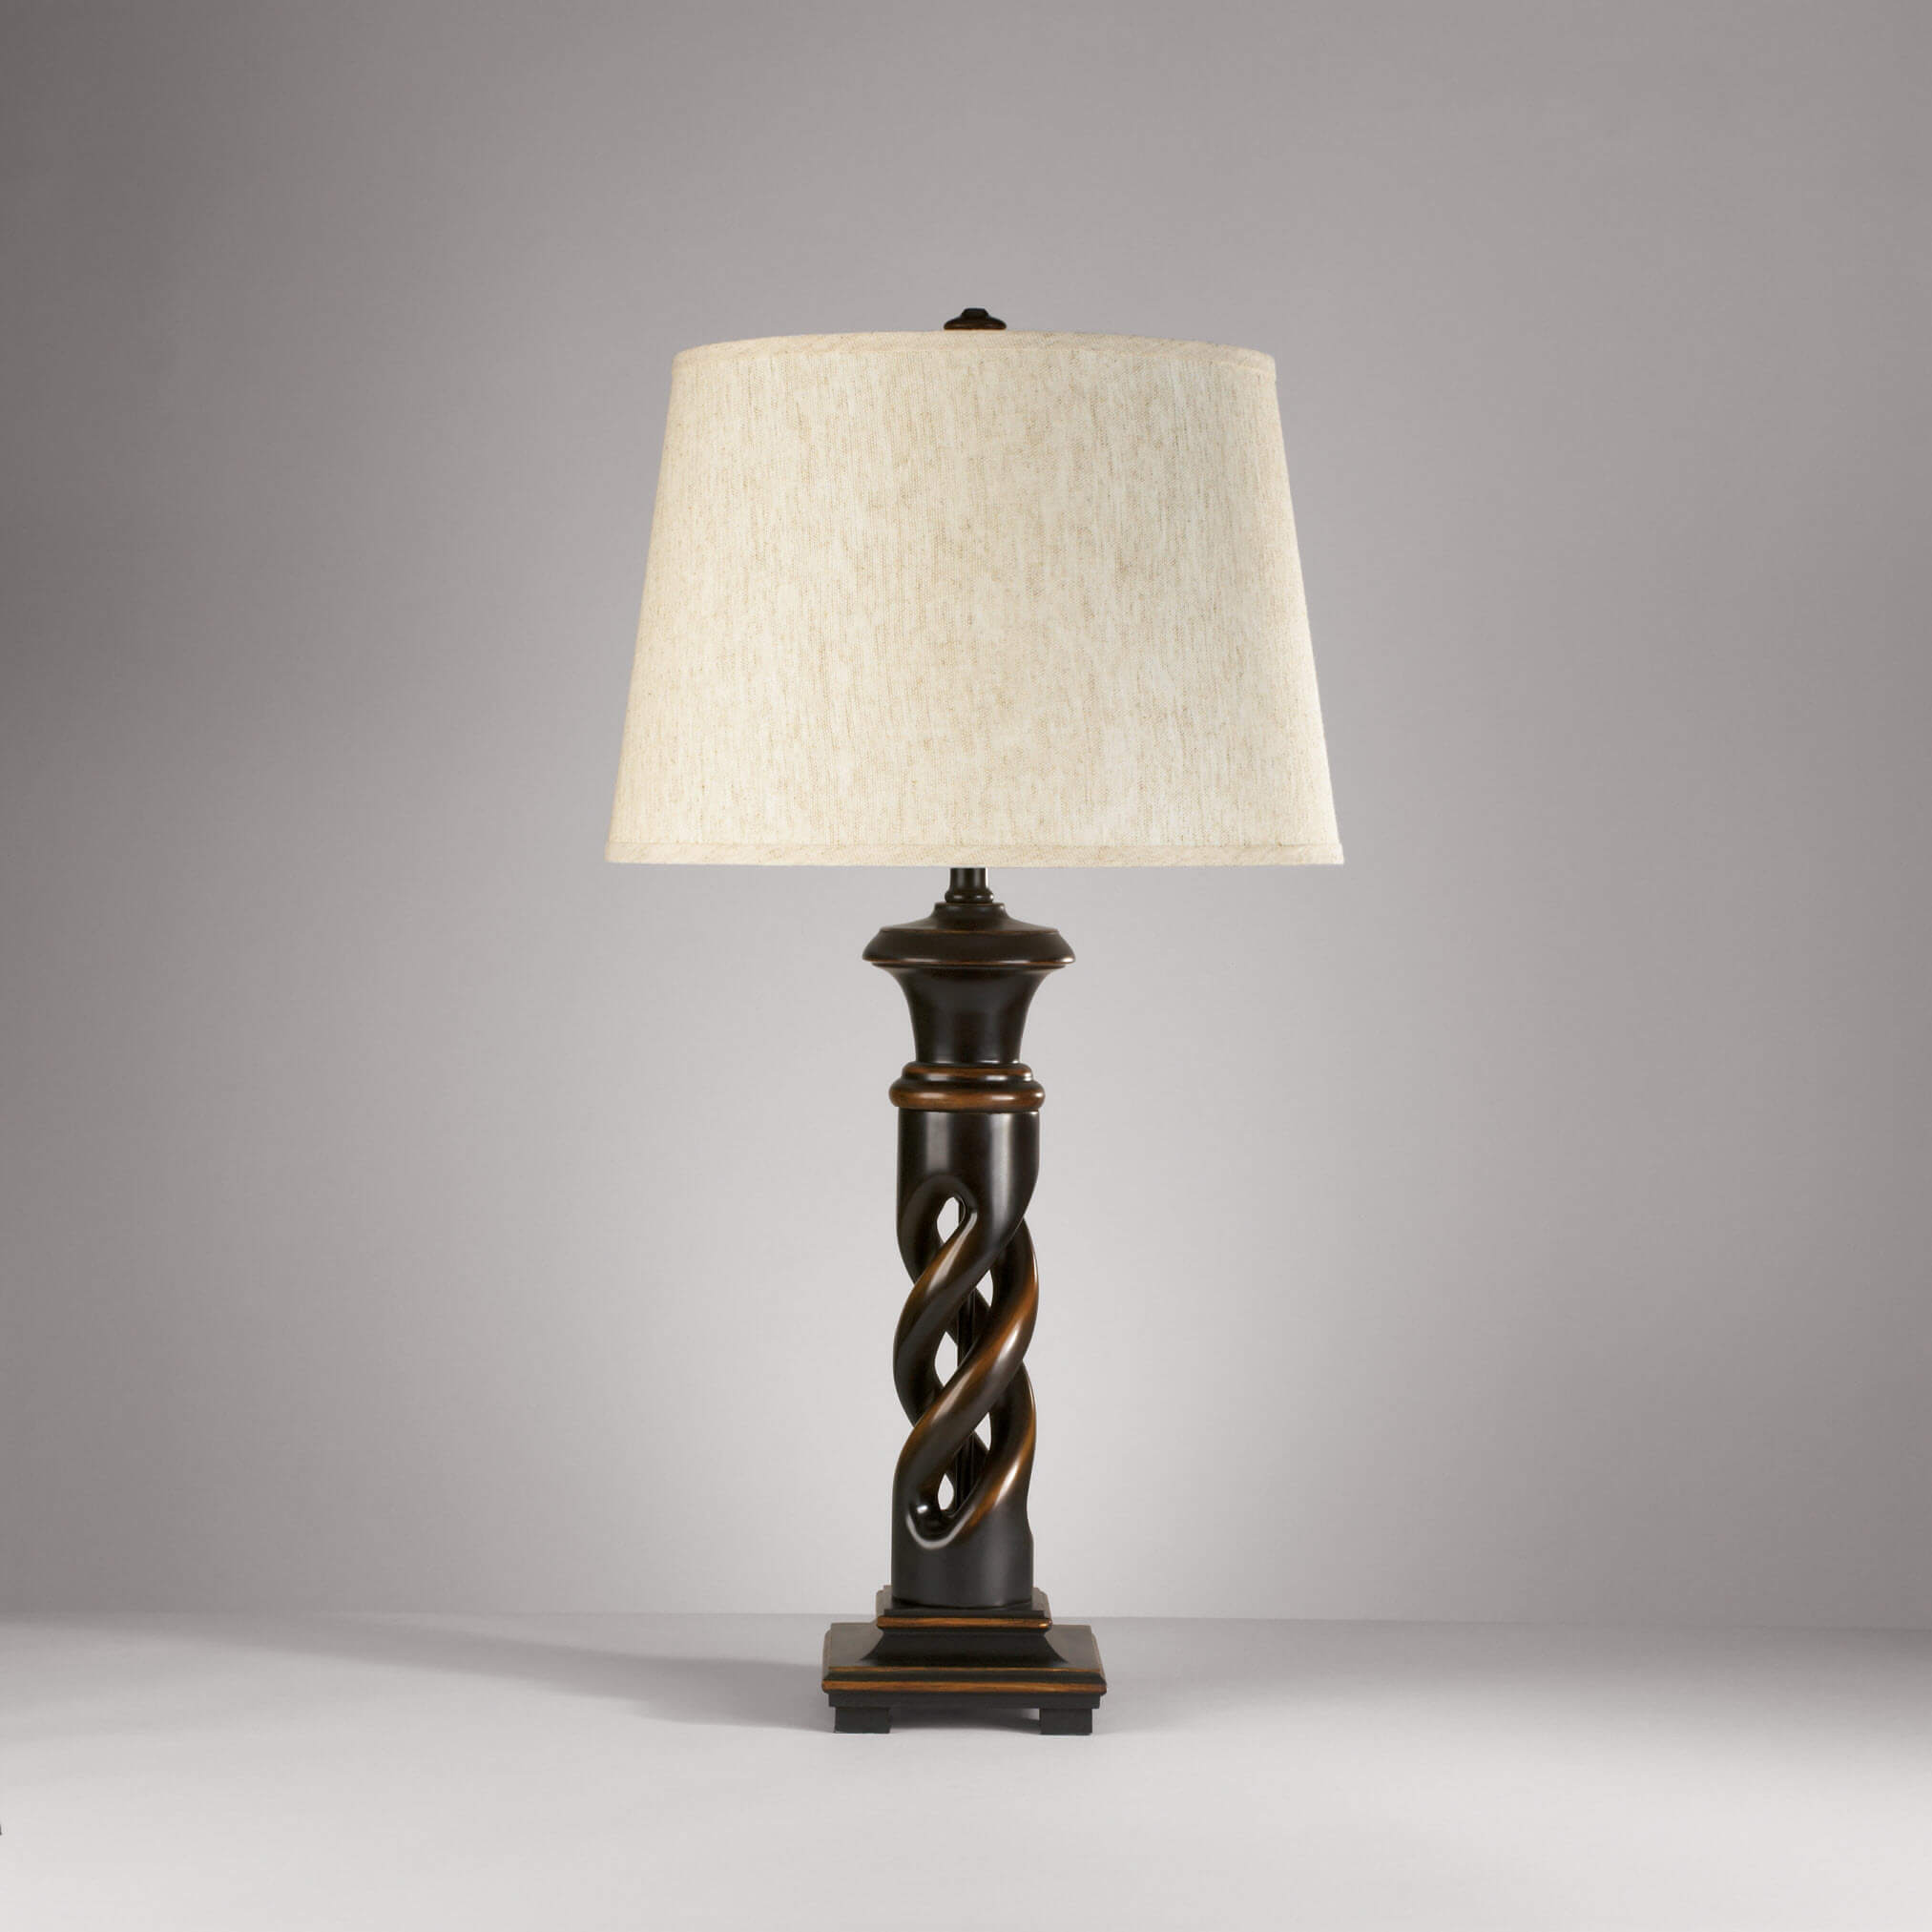 Ashley Fallon Table Lamps